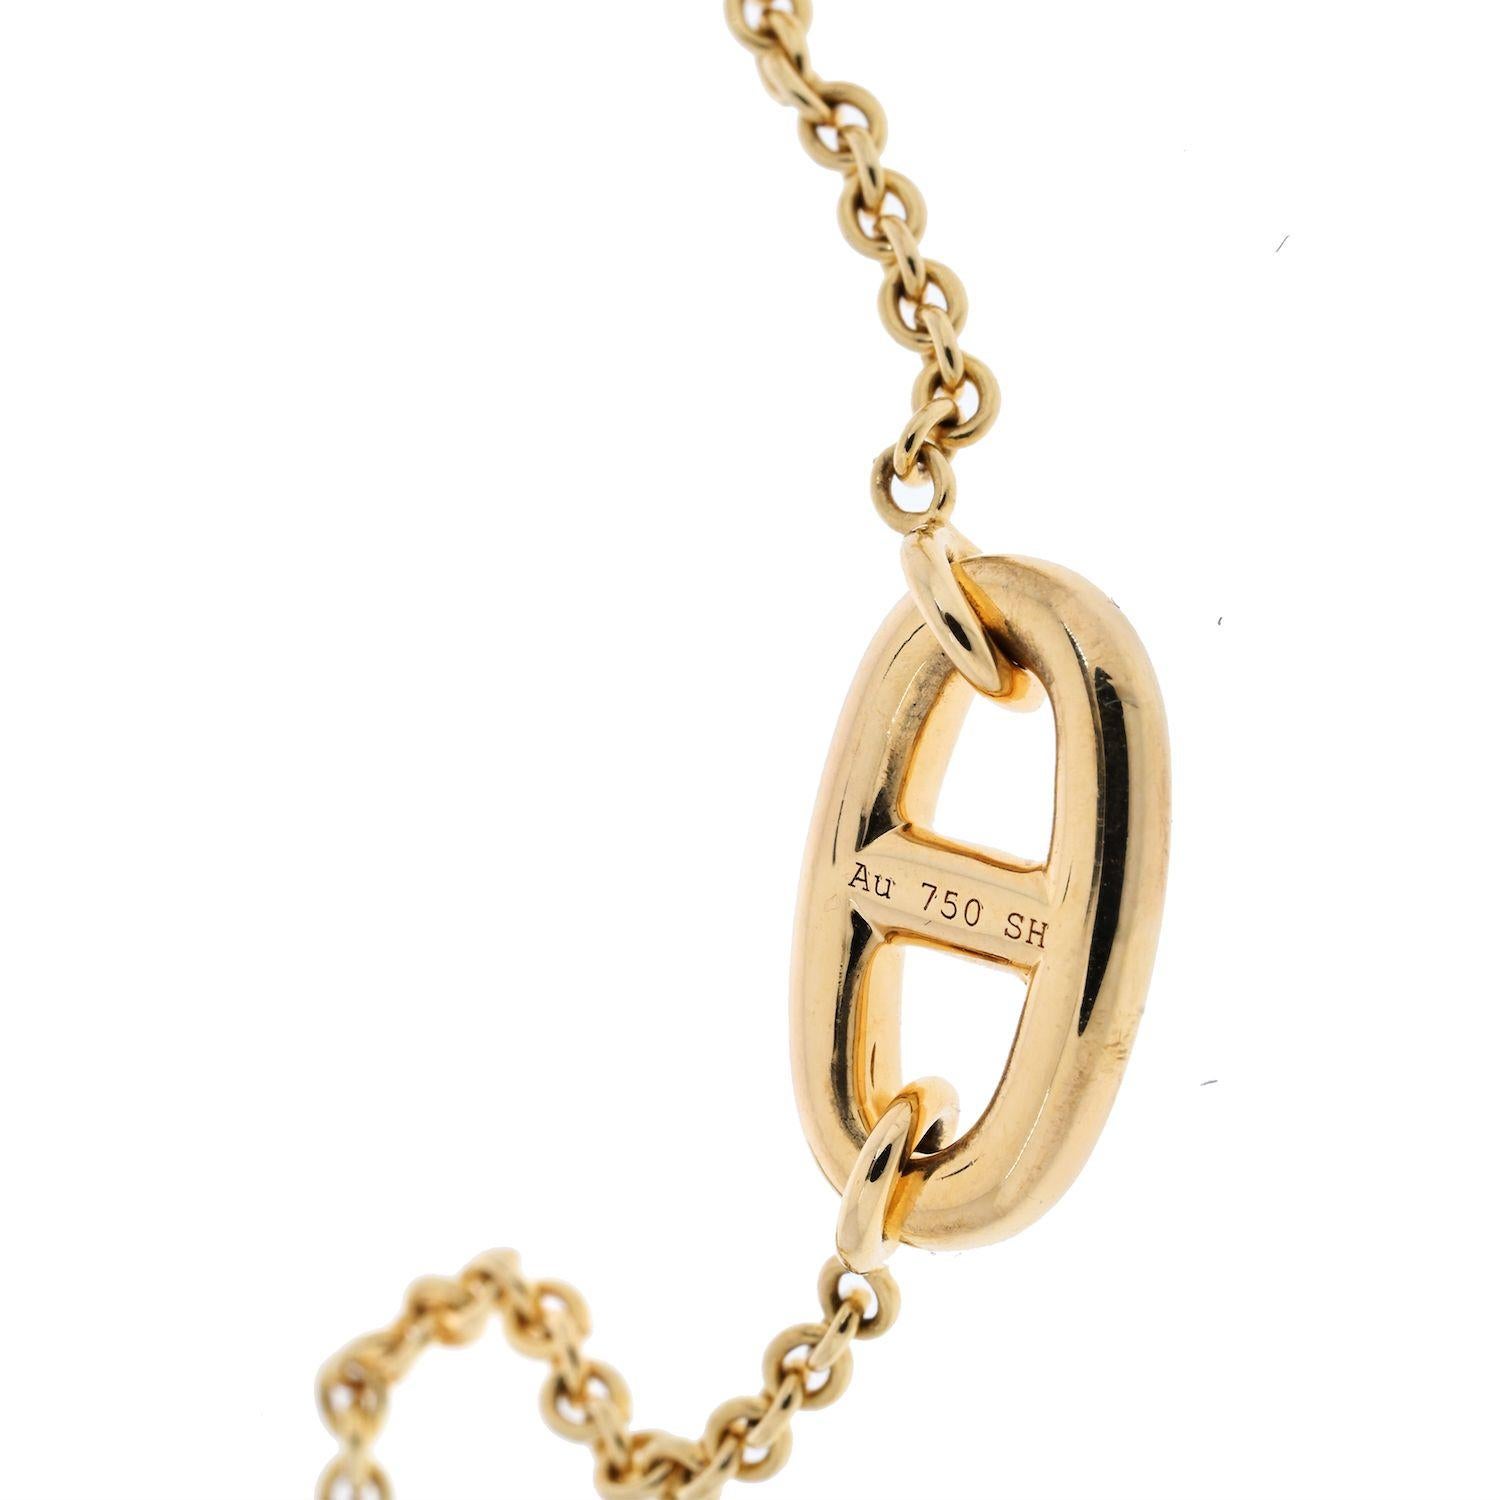 Dieses schicke Hermes-Armband aus der Farandole-Kollektion besteht aus einer Kette und ovalen Gliedern aus 18 Karat Roségold, die mit einem Knebelverschluss versehen sind. Hergestellt in Frankreich in den 2010er Jahren. 

6 Zoll.